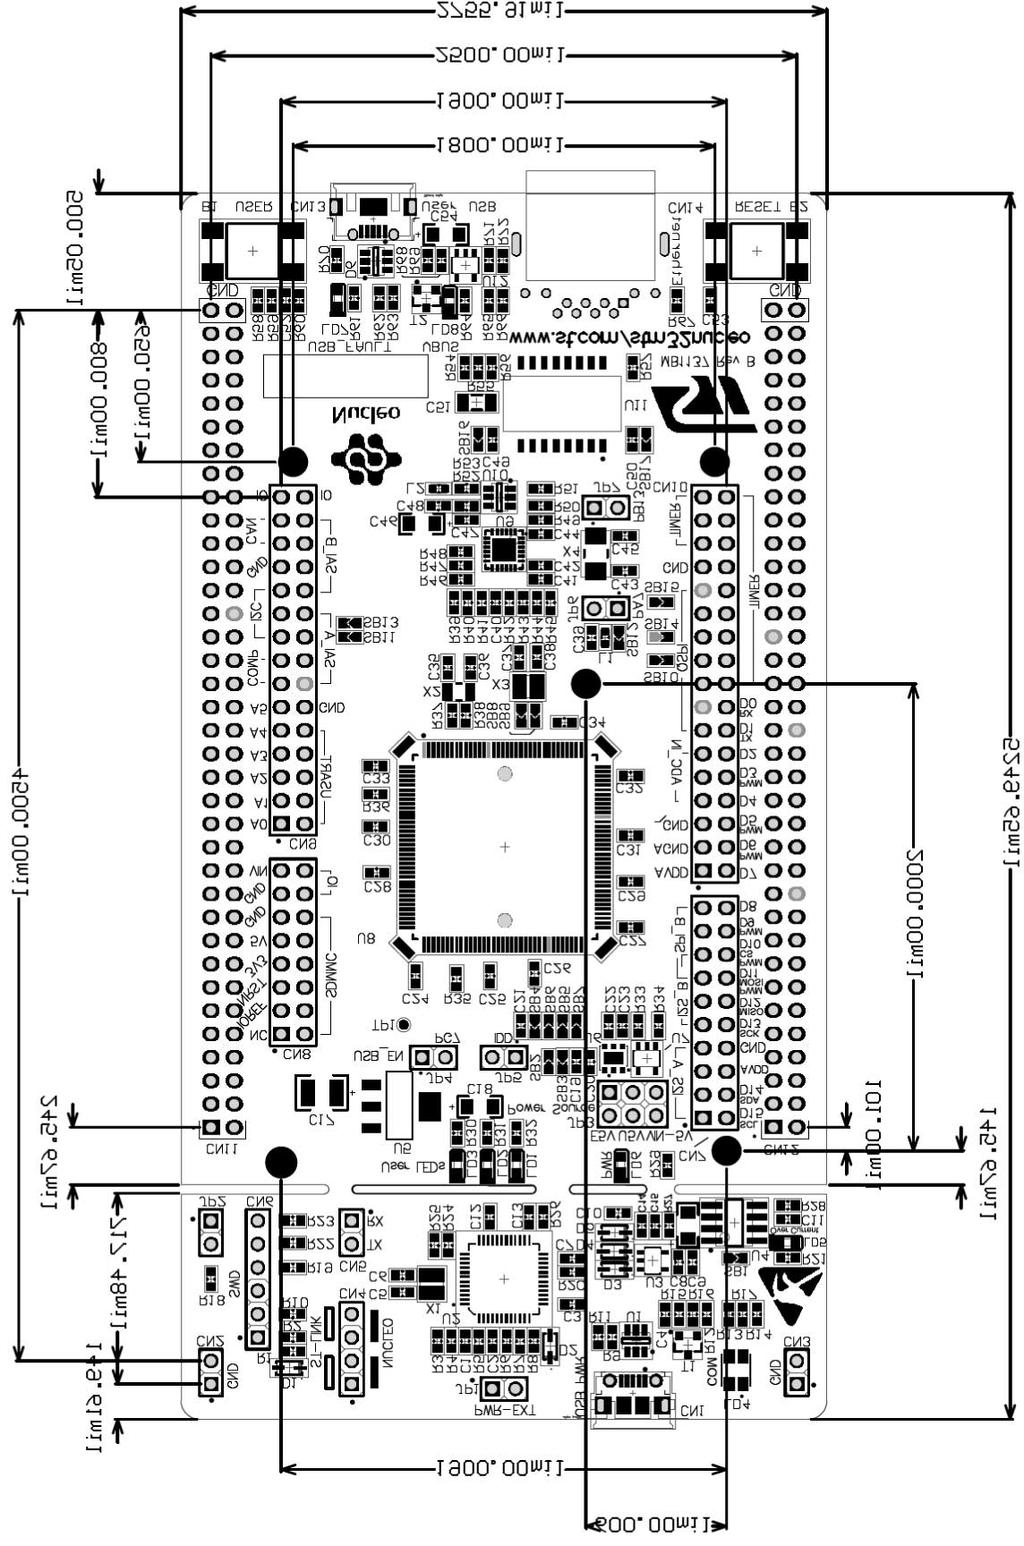 Hardware layout and configuration UM1974 Figure 7.